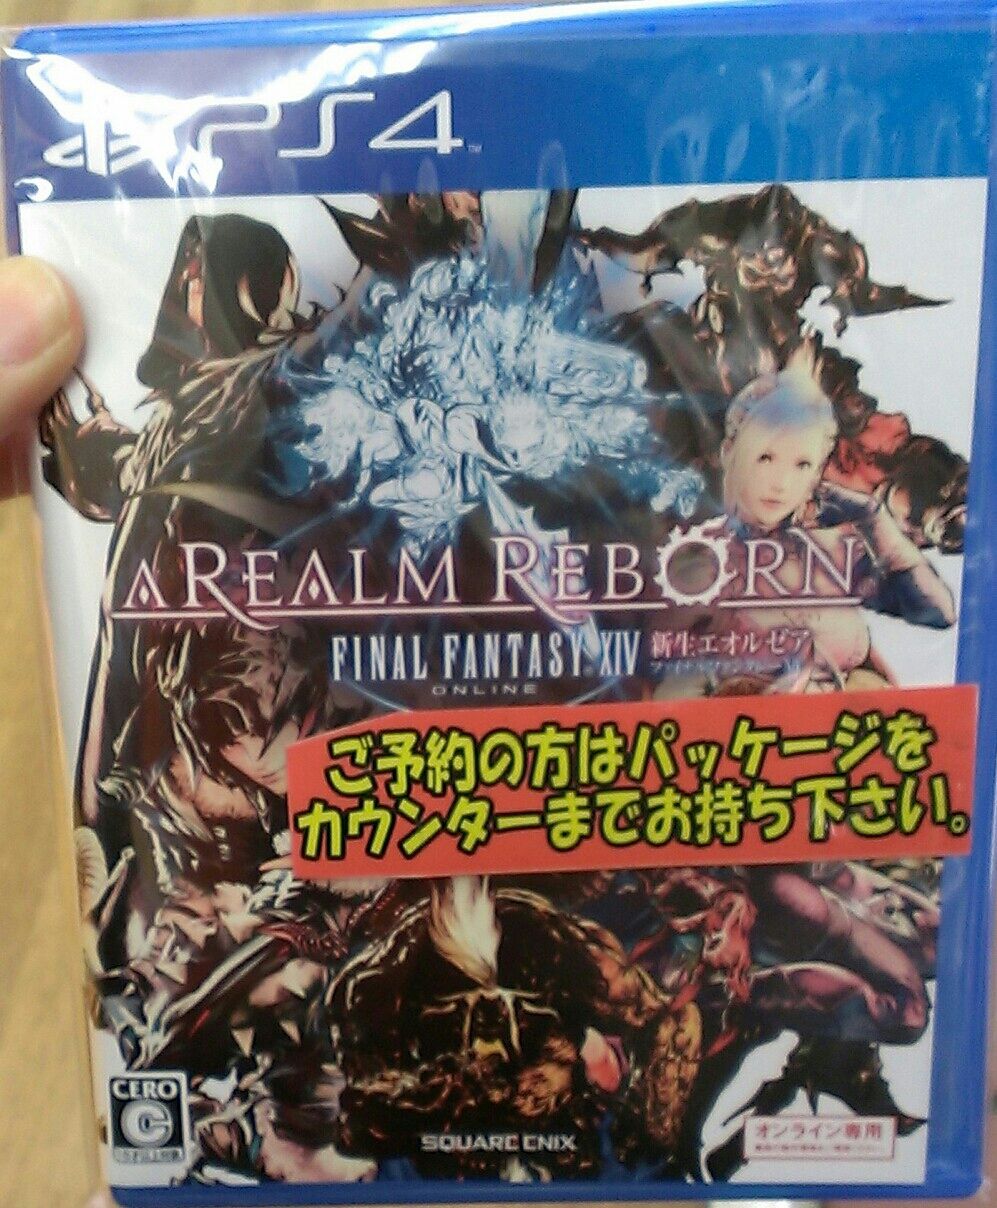 【PS4】『 ファイナルファンタジー14: 新生エオルゼア - Final Fantasy XIV 』の販促物いろいろ♪ : e-forumブログ